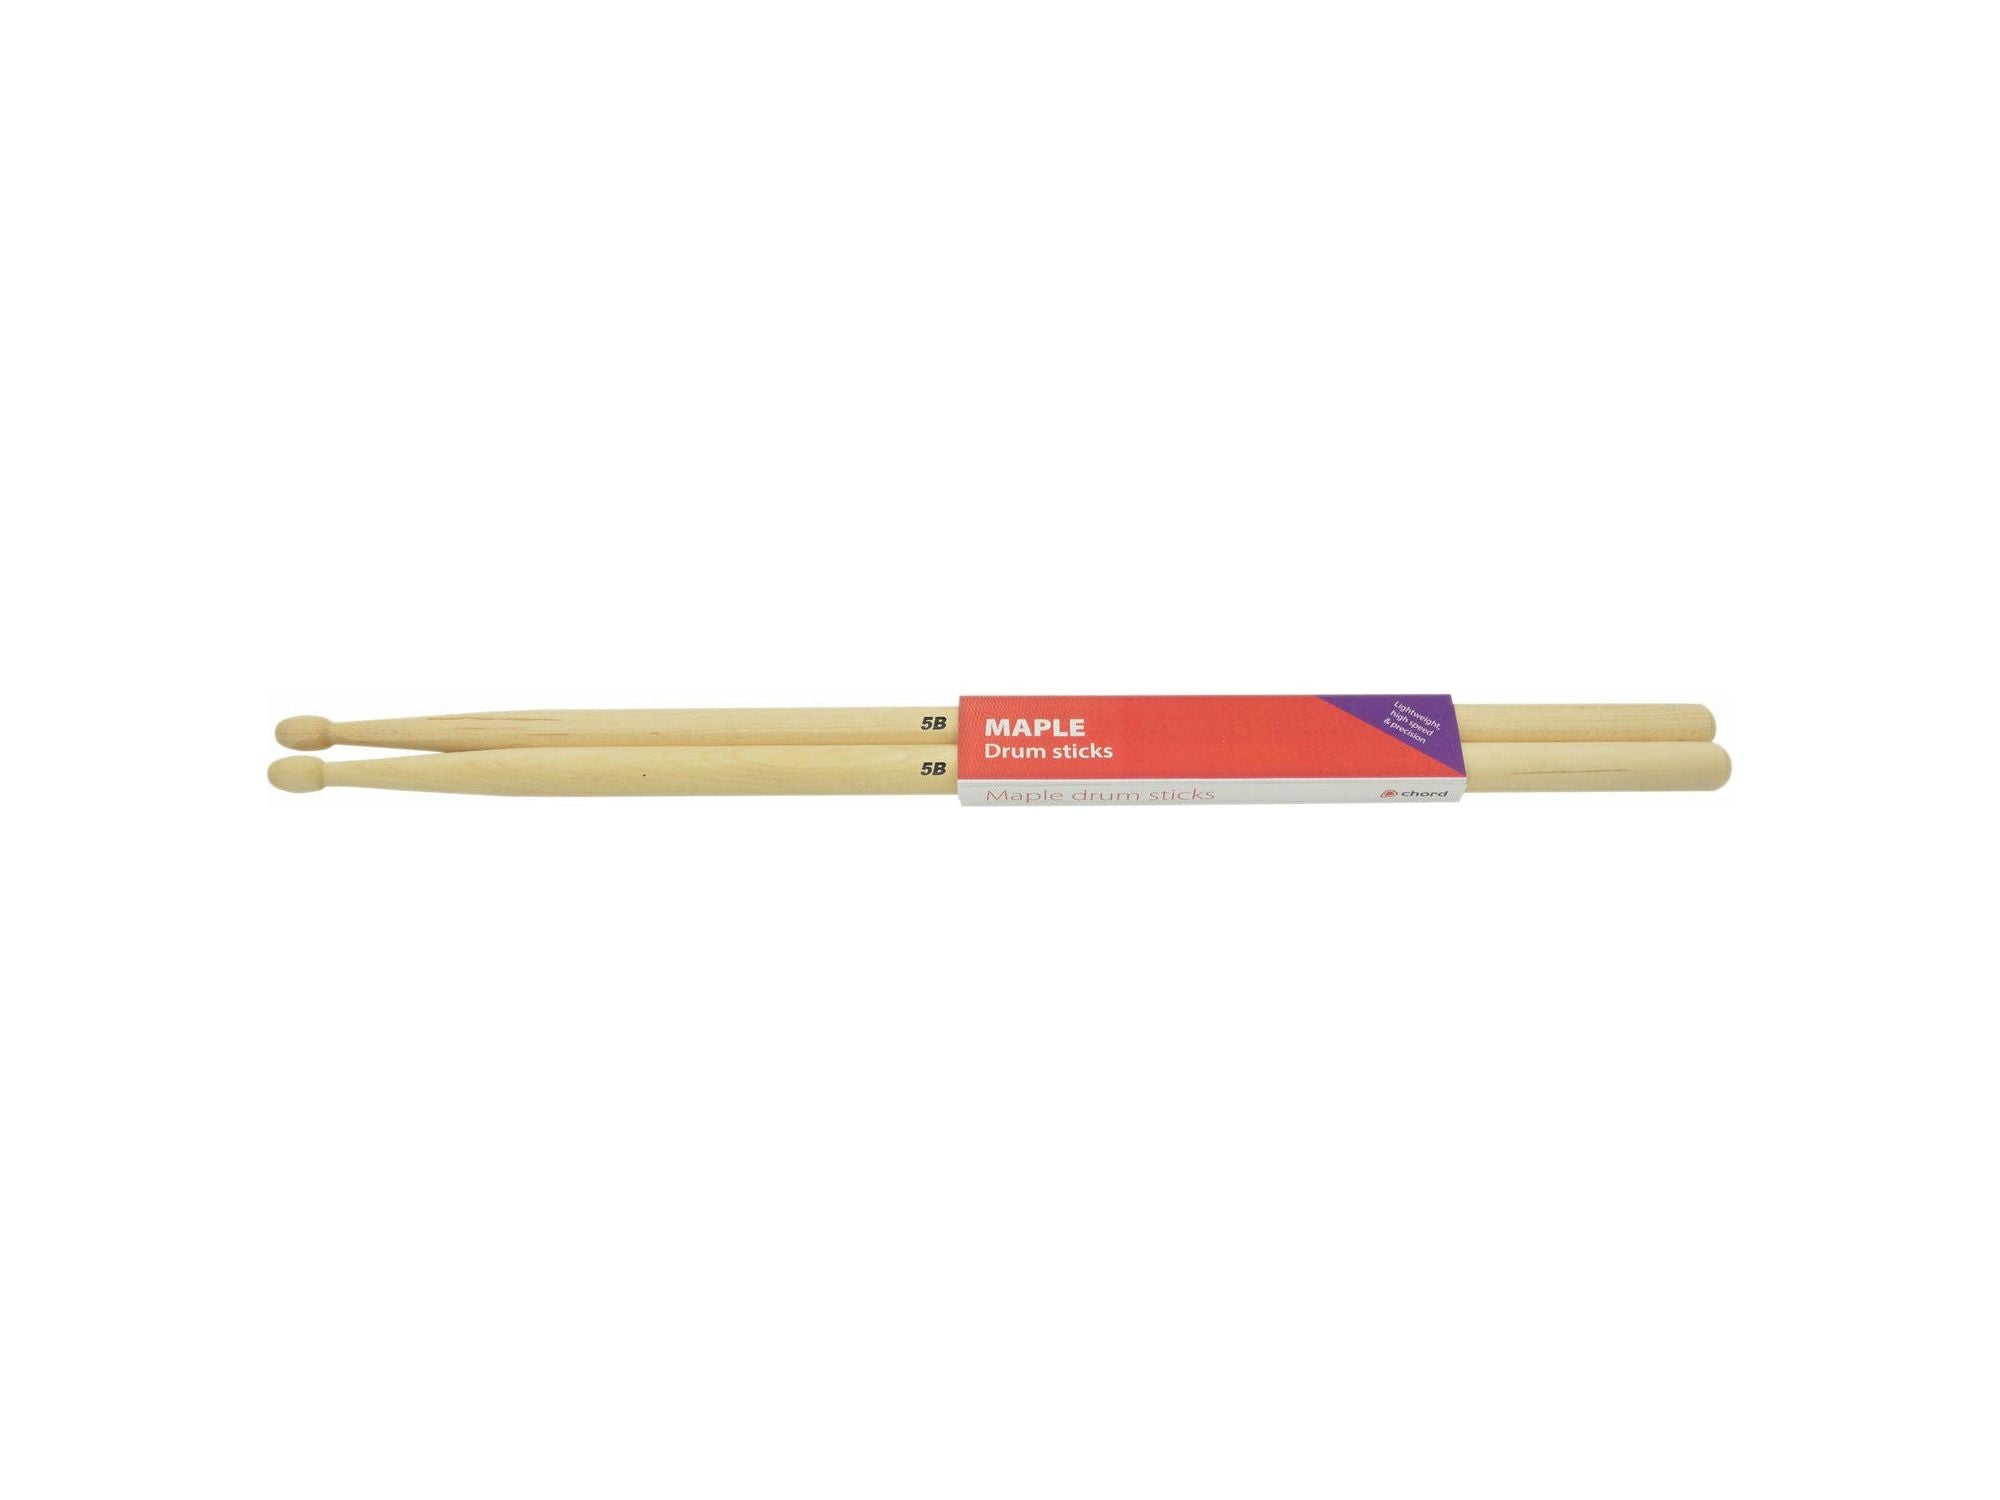 Maple Drum Sticks 5B - 1 Pair